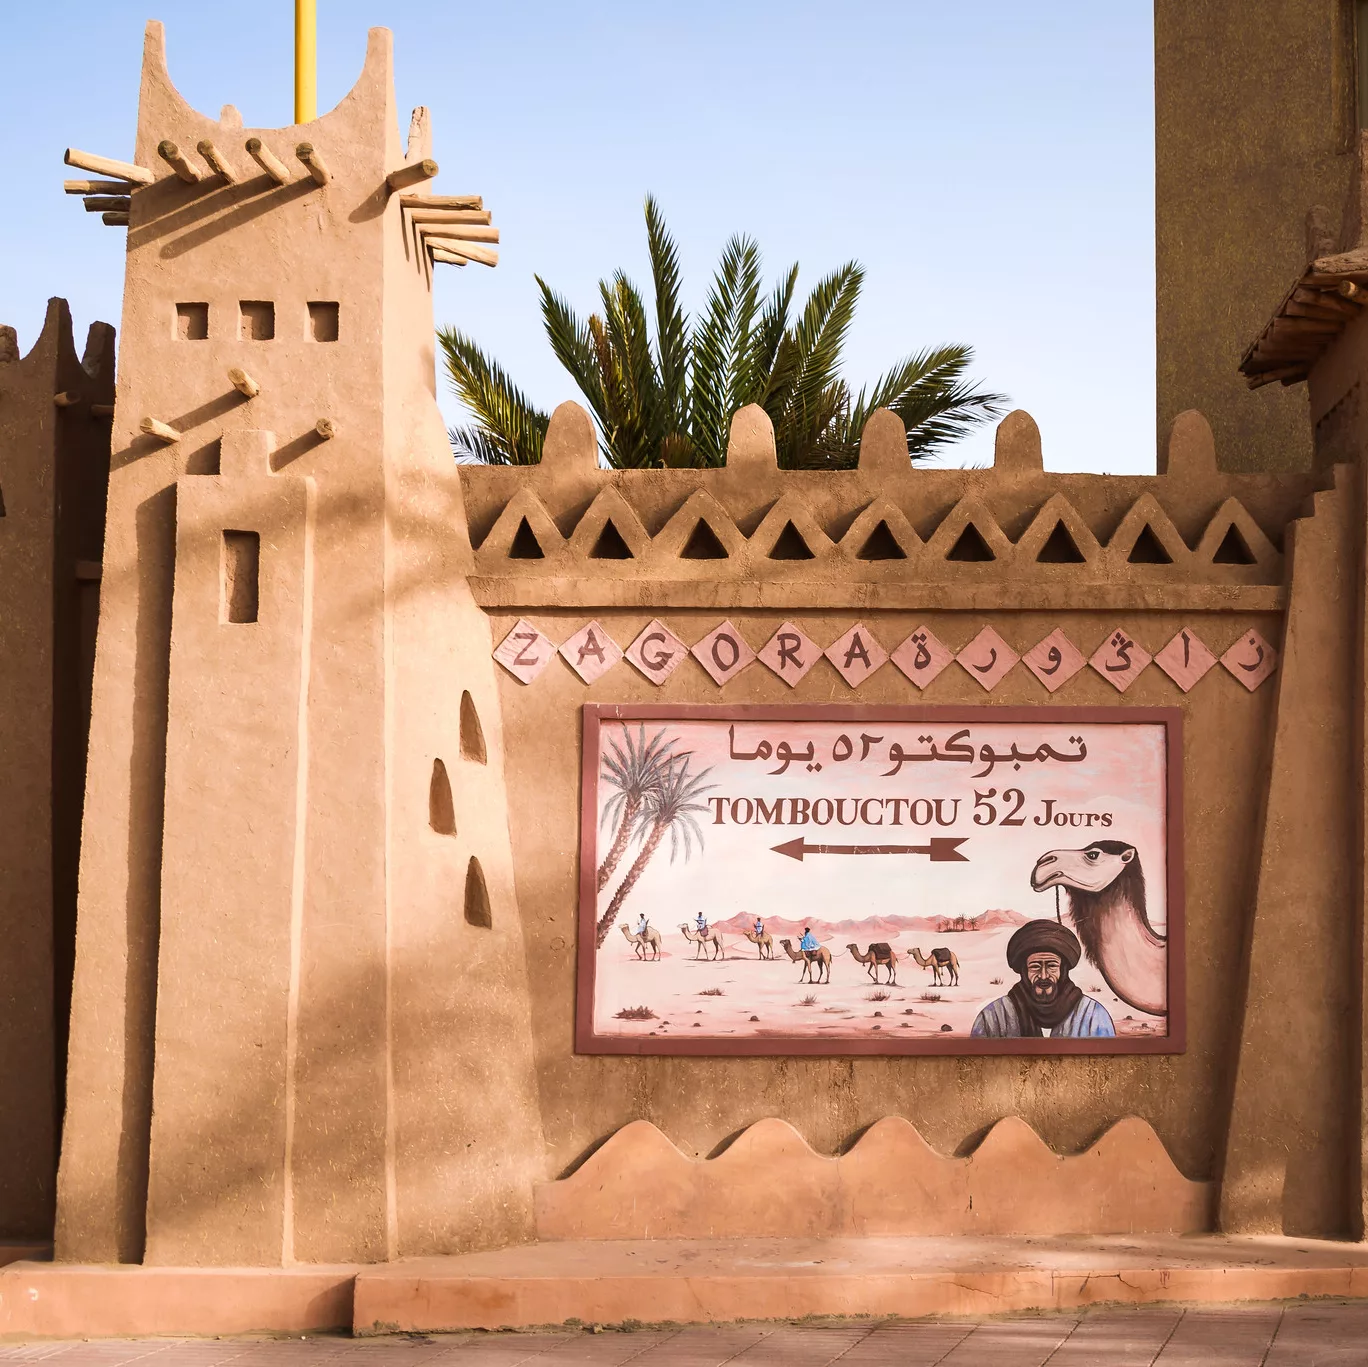 "52-days to Timbuktu" sign